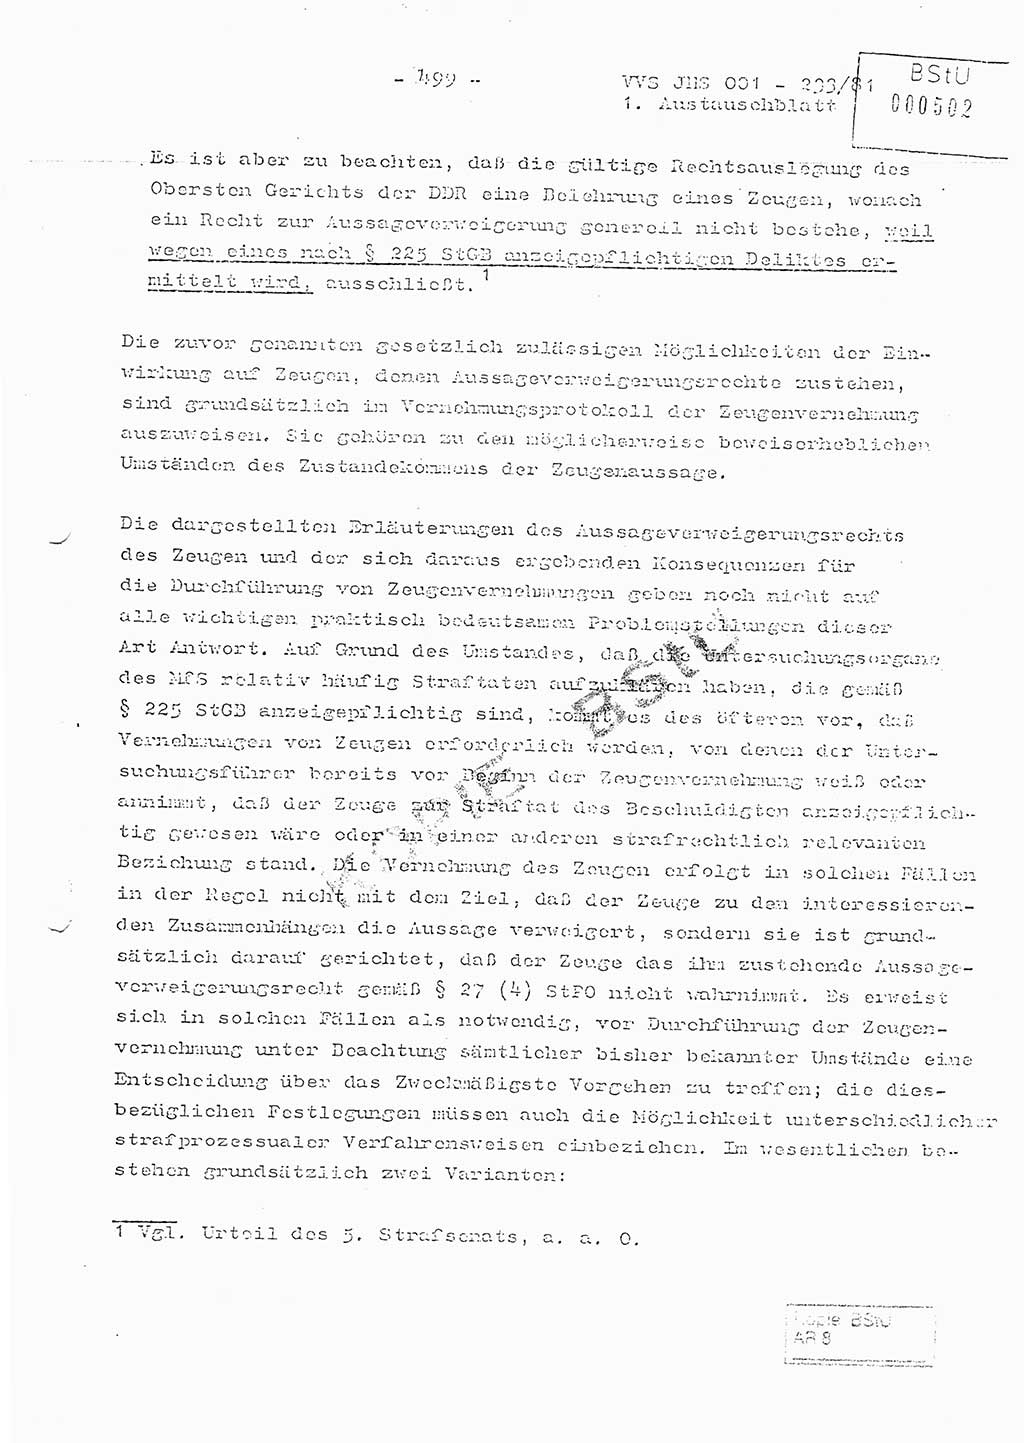 Dissertation Oberstleutnant Horst Zank (JHS), Oberstleutnant Dr. Karl-Heinz Knoblauch (JHS), Oberstleutnant Gustav-Adolf Kowalewski (HA Ⅸ), Oberstleutnant Wolfgang Plötner (HA Ⅸ), Ministerium für Staatssicherheit (MfS) [Deutsche Demokratische Republik (DDR)], Juristische Hochschule (JHS), Vertrauliche Verschlußsache (VVS) o001-233/81, Potsdam 1981, Blatt 499 (Diss. MfS DDR JHS VVS o001-233/81 1981, Bl. 499)